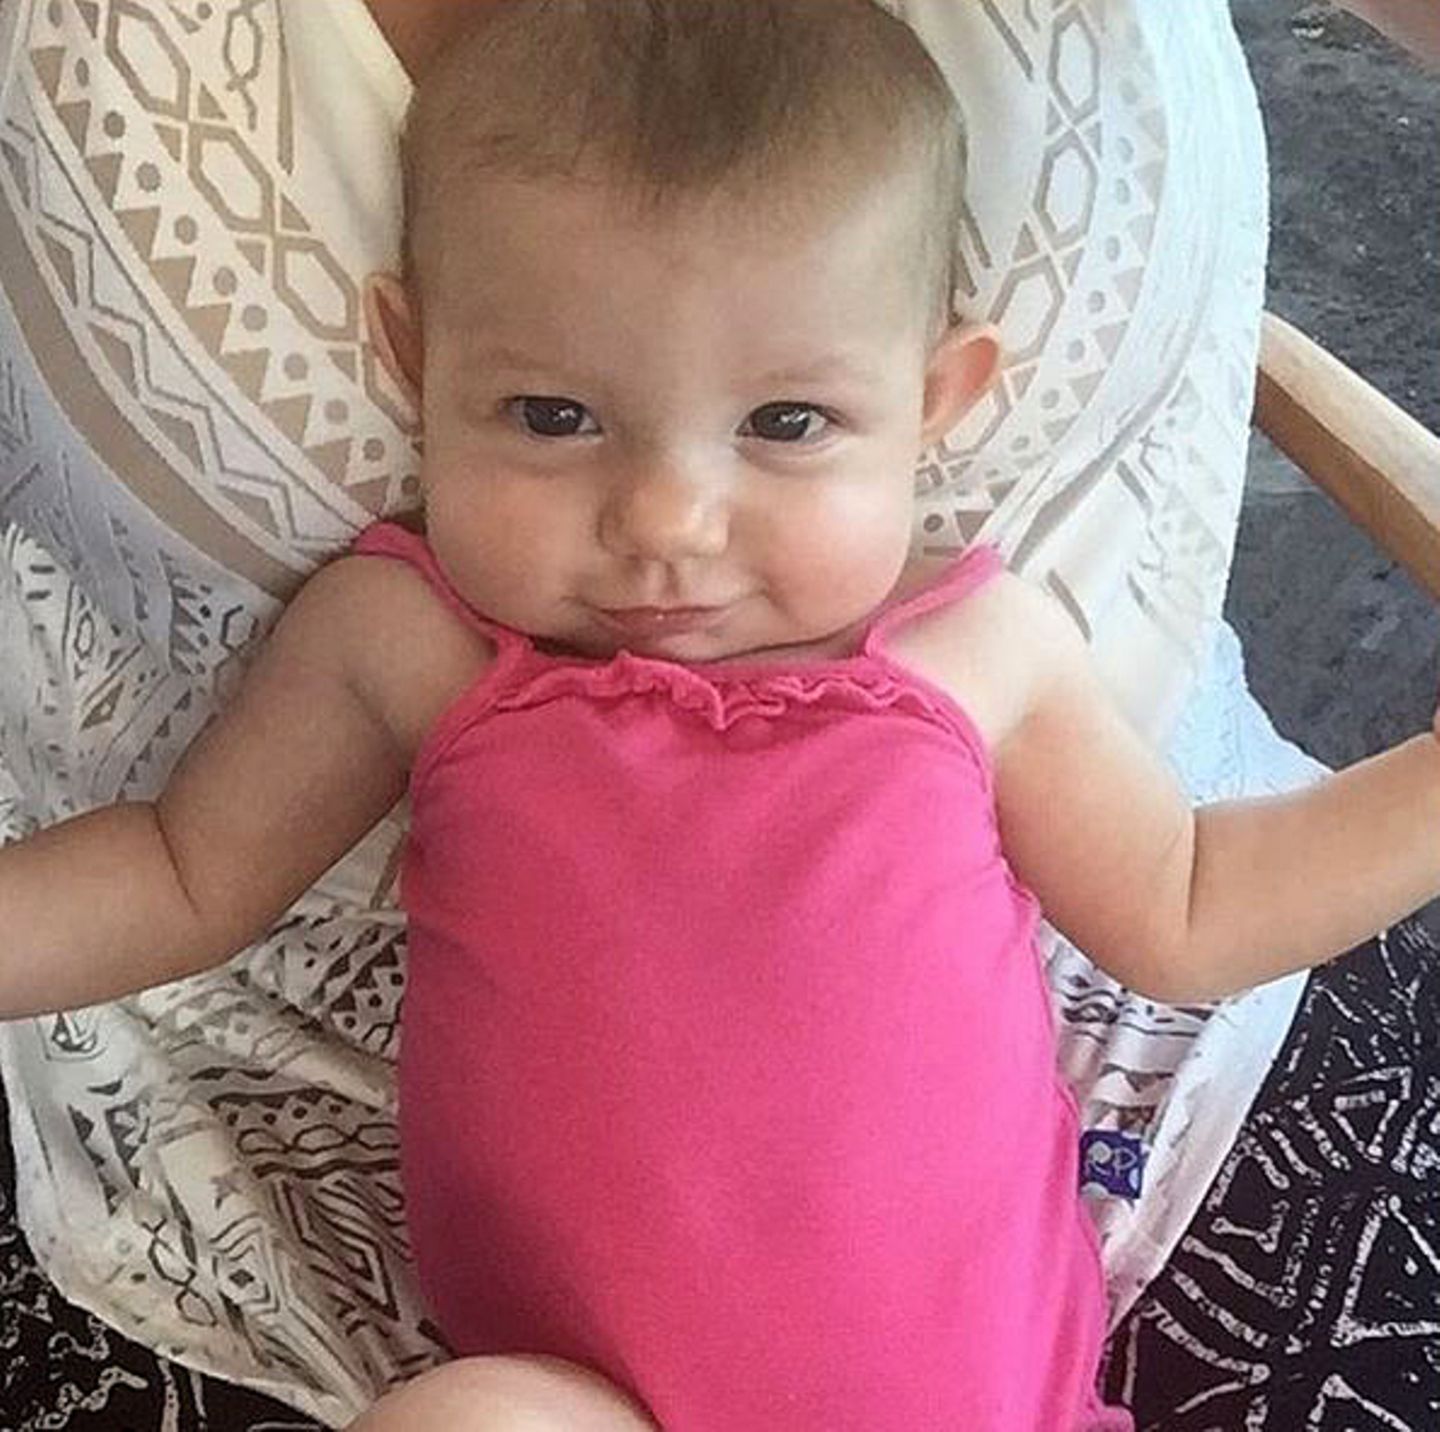 2. September 2015: "Babys erster Urlaub" schreibt Haylie Duff zu dem Bild von ihrer Tochter Ryan Ava Erhard. Zum ersten Mal teilt die Schwester von Hilary Duff ein Bild ihres Nachwuchses mit ihren Instagram-Fans.